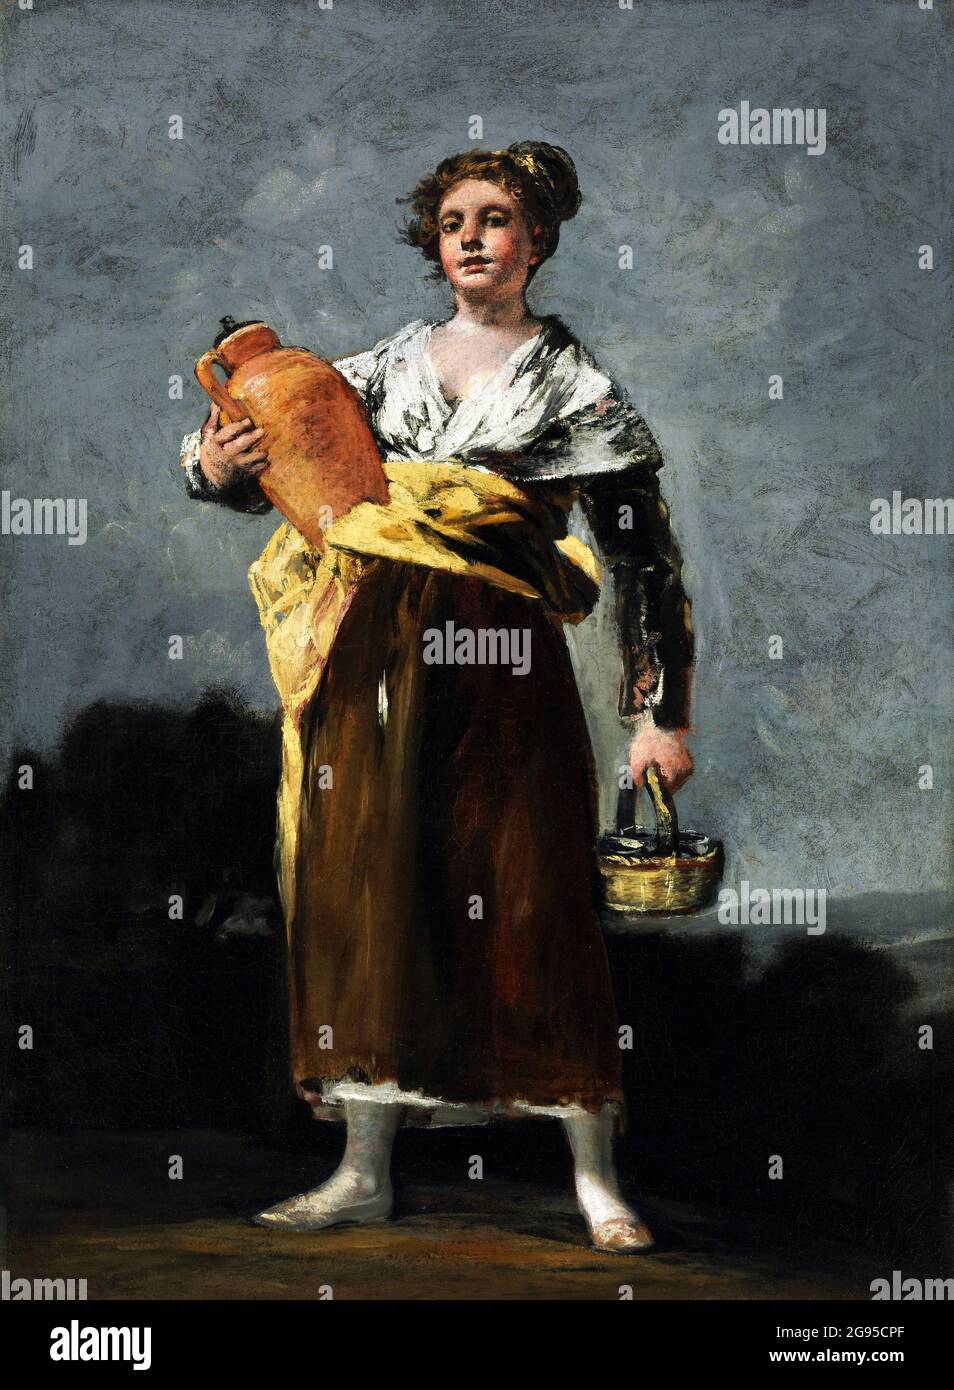 Goya. Le porte-eau ('la Aguadora') de Francisco José de Goya y Lucientes (1746-1828), huile sur toile, c. 1800-1812 Banque D'Images